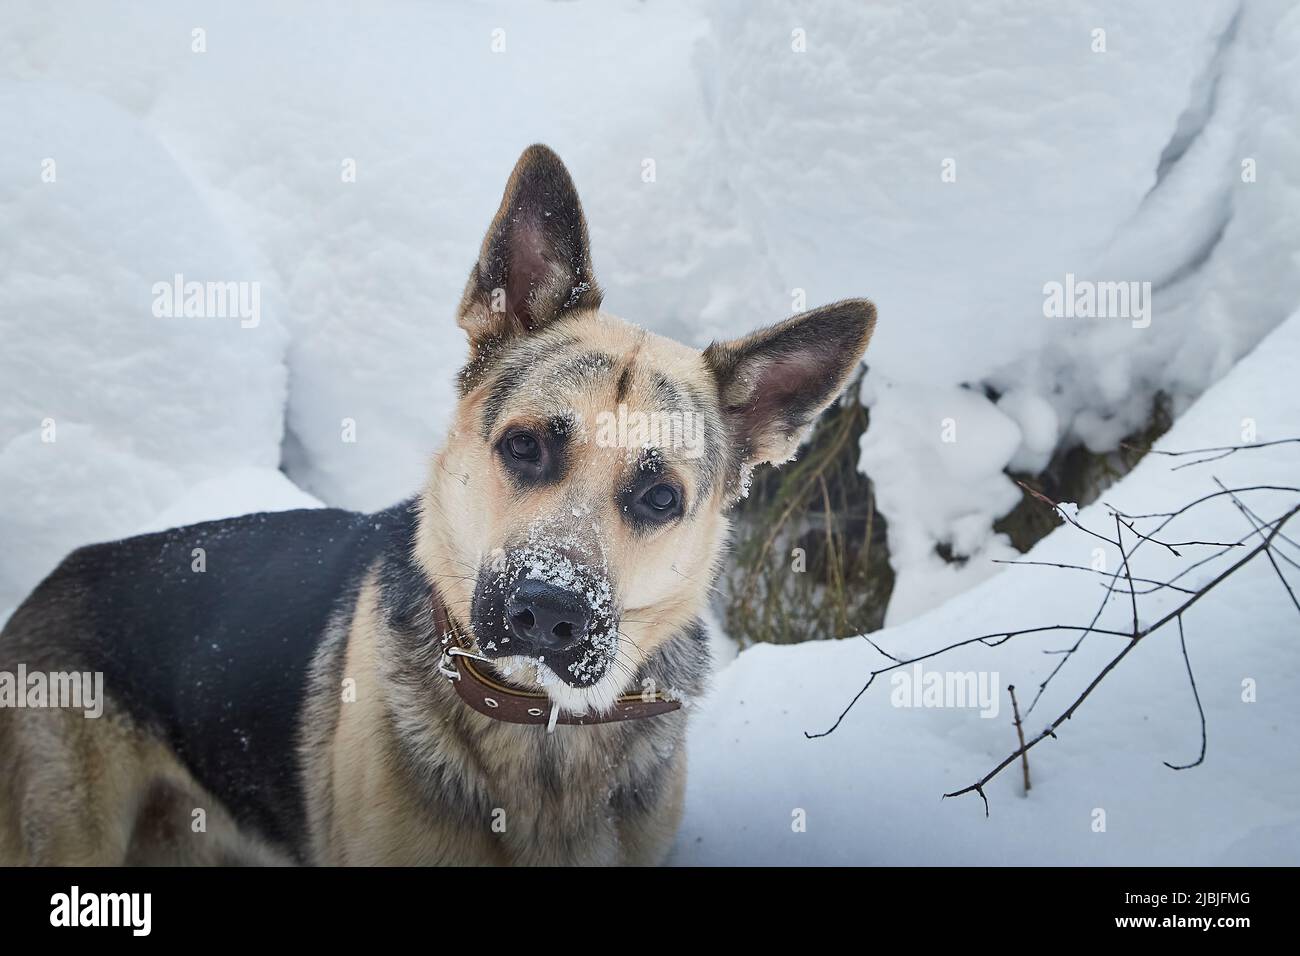 Chien Berger allemand à l'extérieur sur une neige blanche en hiver. Chien de garde russe Berger d'Europe de l'est dans le paysage de la nature Banque D'Images